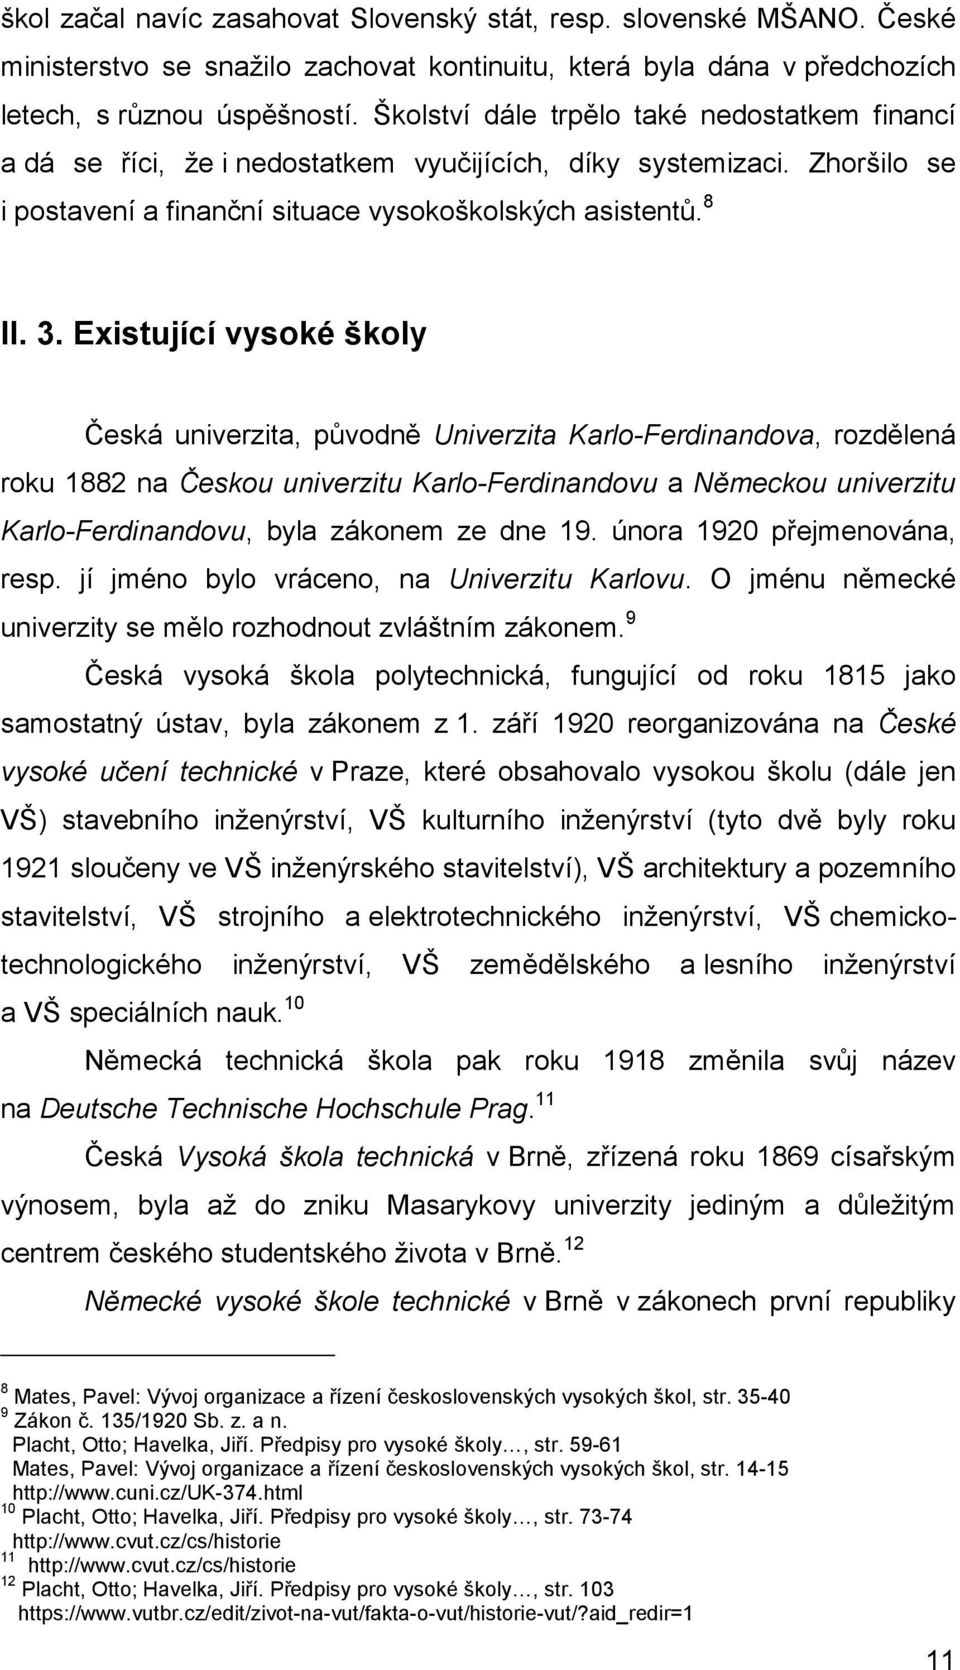 Existující vysoké školy Česká univerzita, původně Univerzita Karlo-Ferdinandova, rozdělená roku 1882 na Českou univerzitu Karlo-Ferdinandovu a Německou univerzitu Karlo-Ferdinandovu, byla zákonem ze